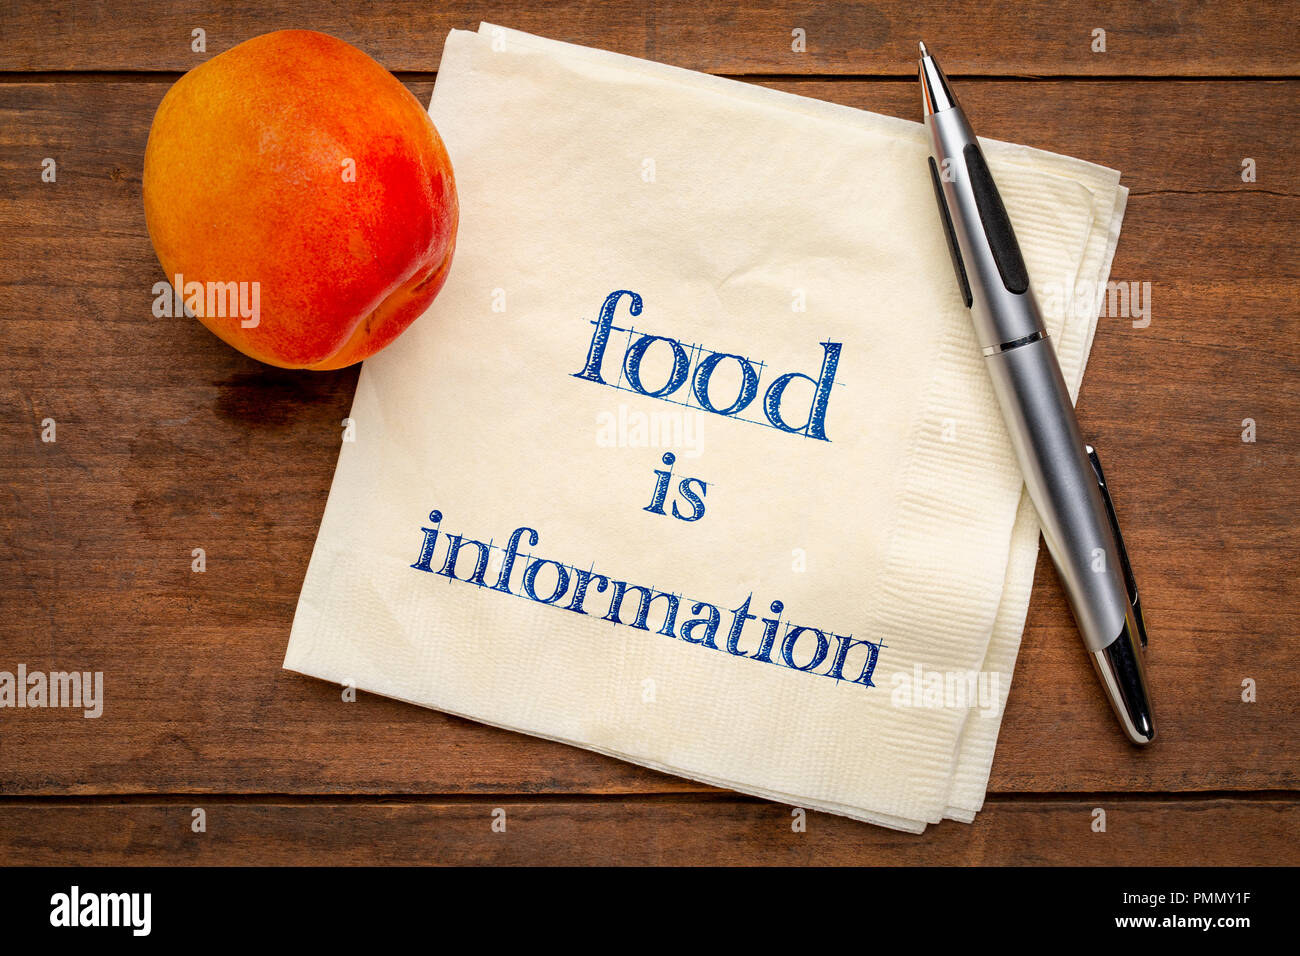 Essen Informationen - Handschrift auf eine Serviette mit einem frischen Aprikosen, Ernährung und eines gesunden Lebensstils Konzept Stockfoto